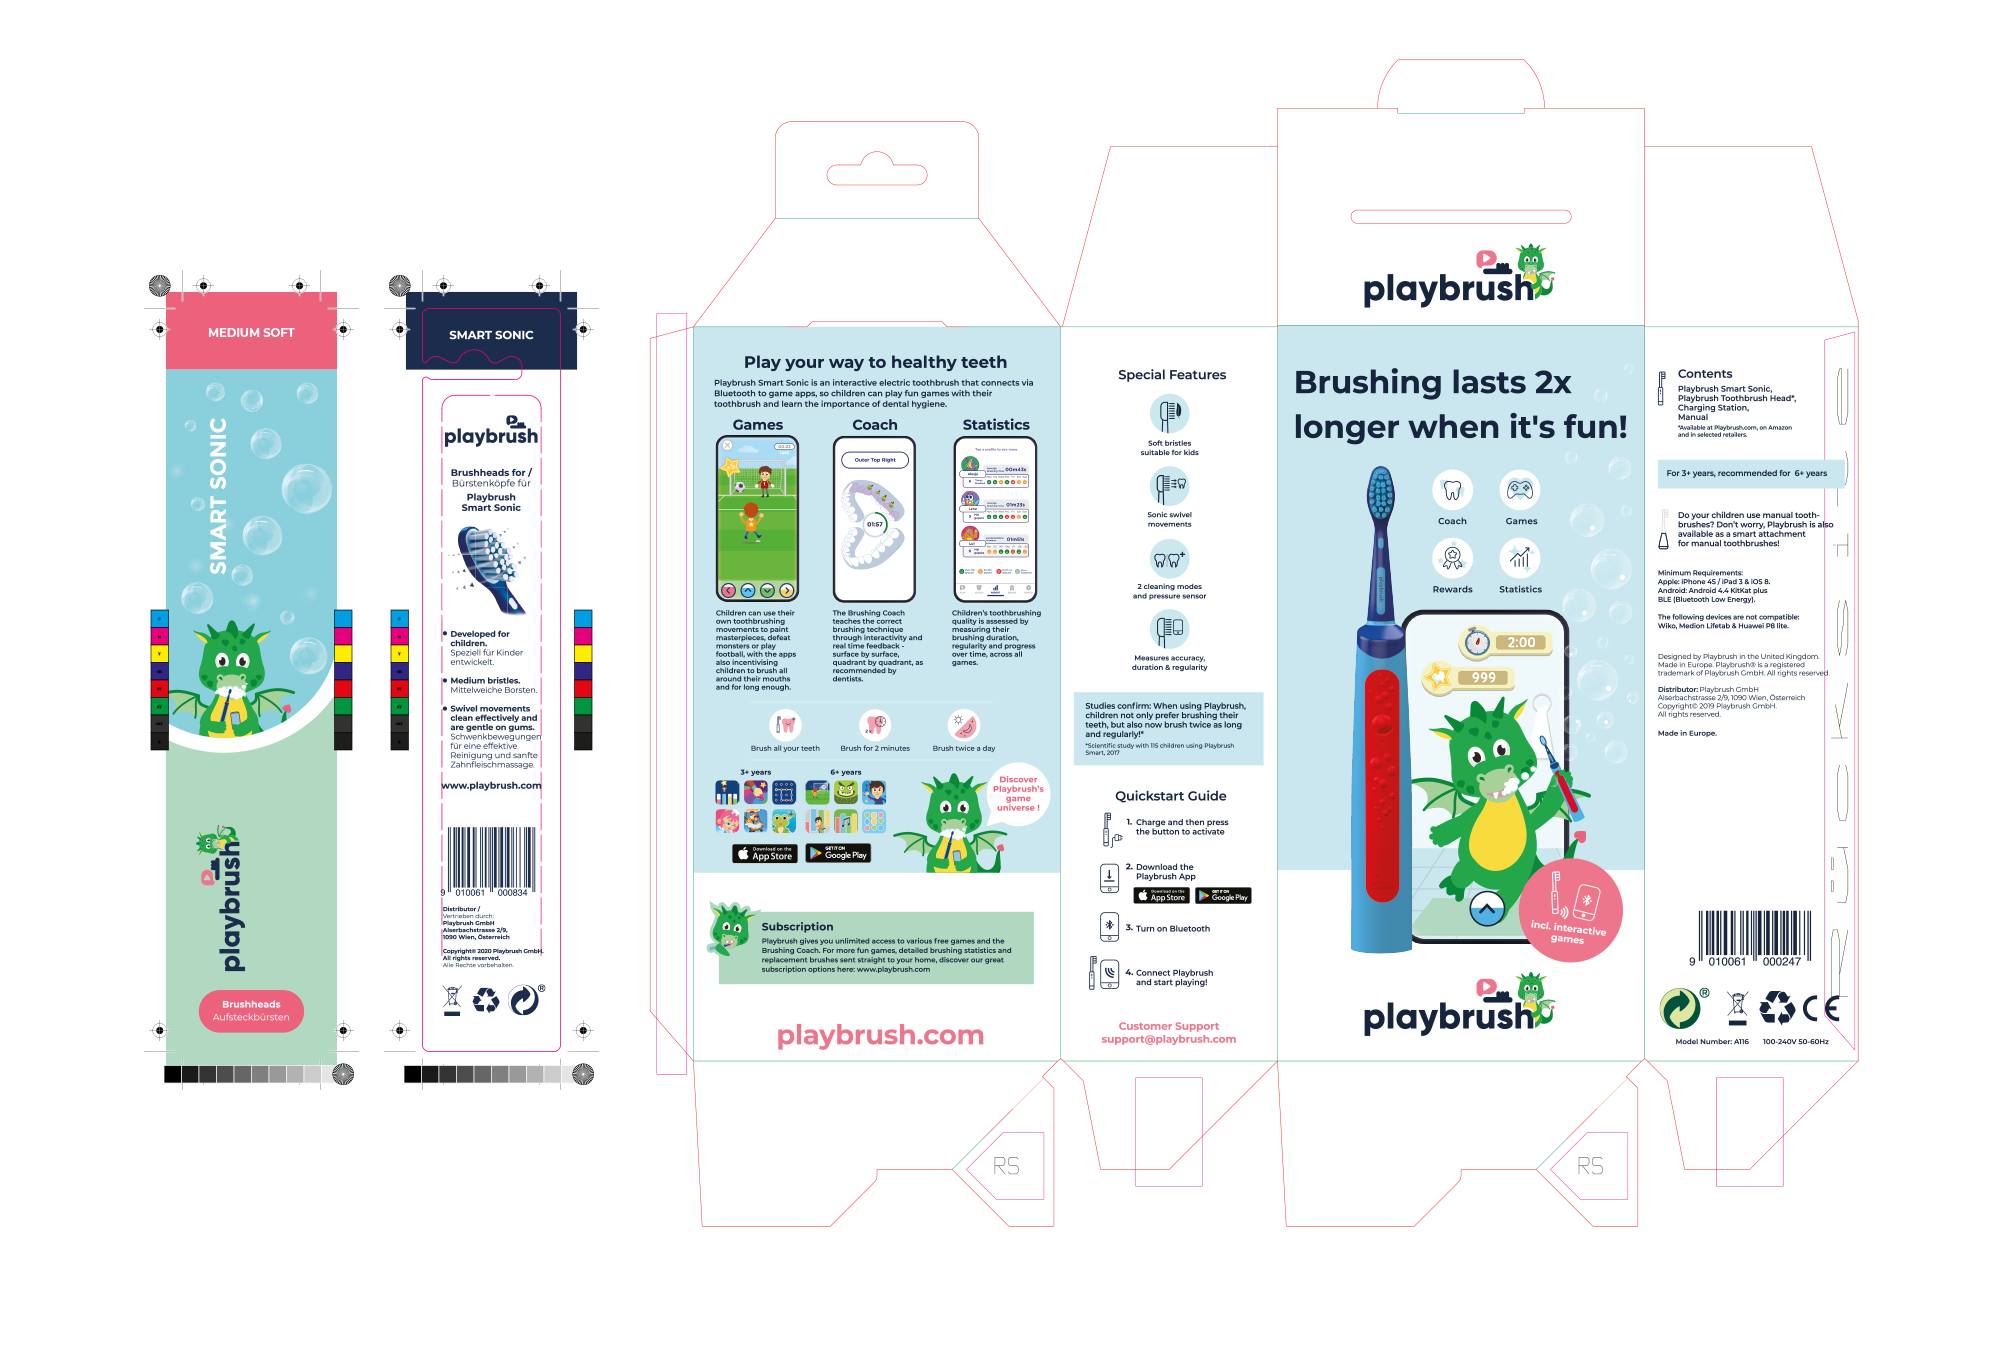 Playbrush-WP-packaging-kids-2019-die-sonic